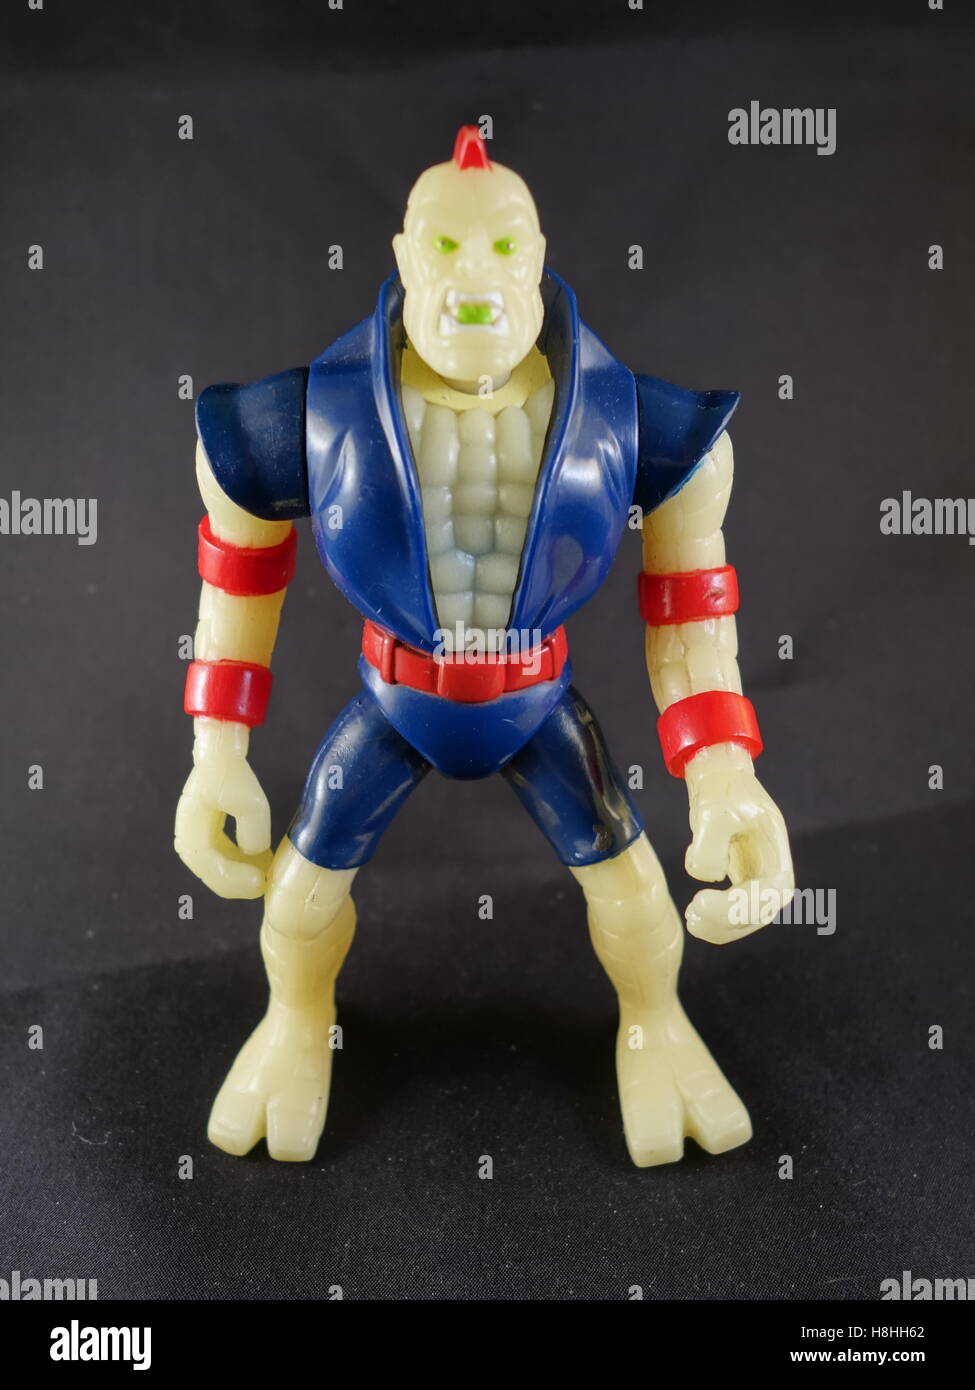 90s Captain Planet villain action figures Stock Photo - Alamy